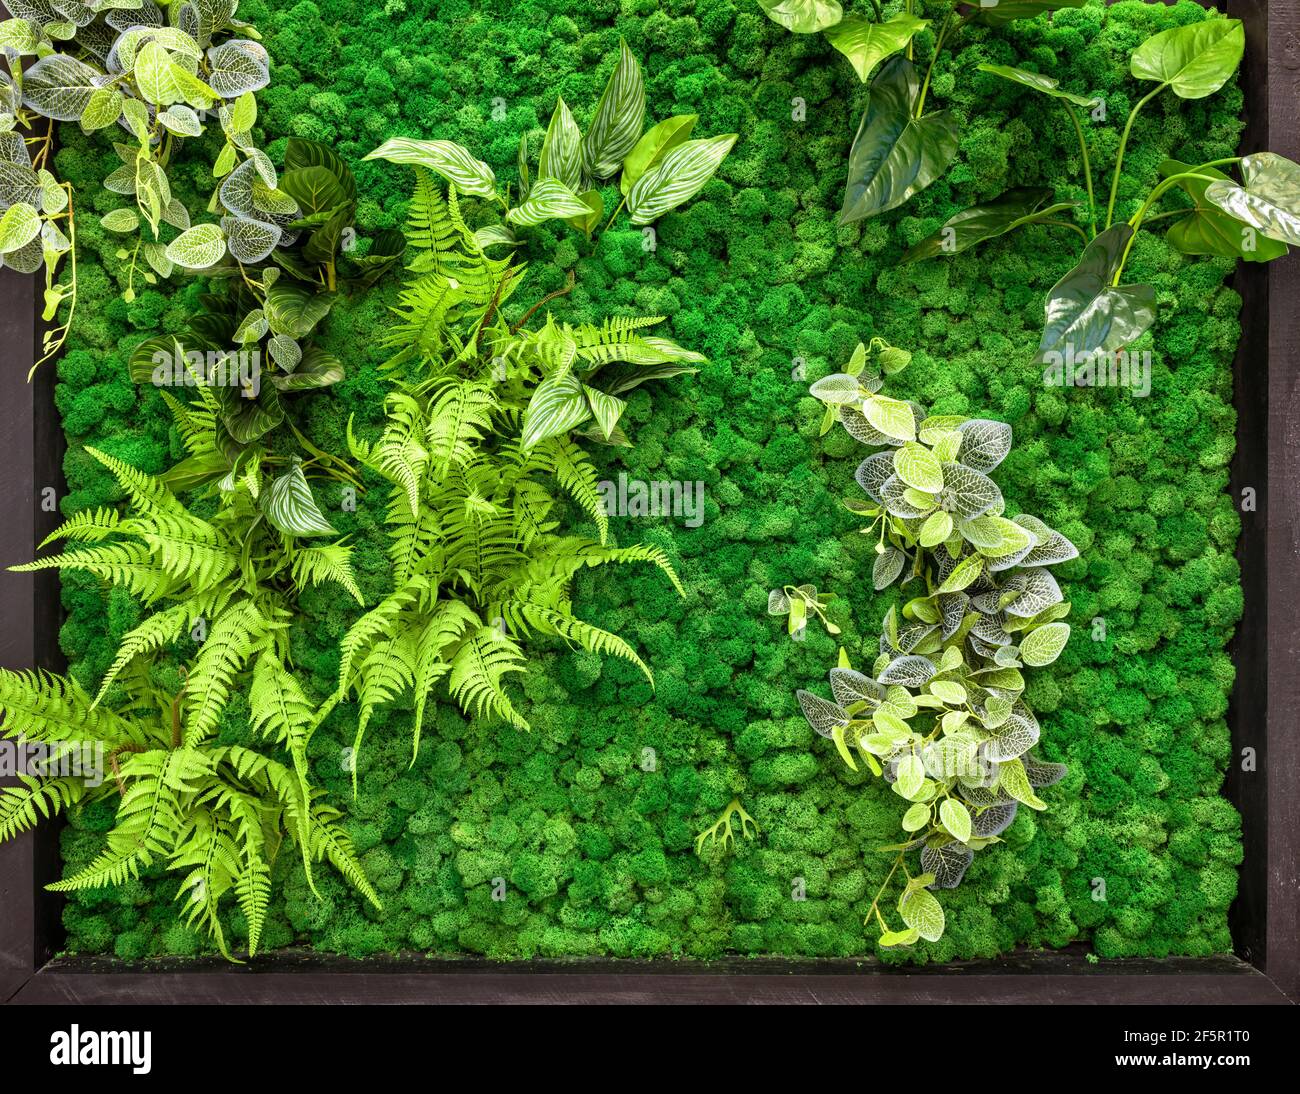 Vertikale Garten Detail, grüne Pflanzen Wand im Büro oder zu Hause Interieur. Gemütliches ökologisches Design mit Landschaftsgestaltung innen. Naturmuster mit Moos-Textur Stockfoto